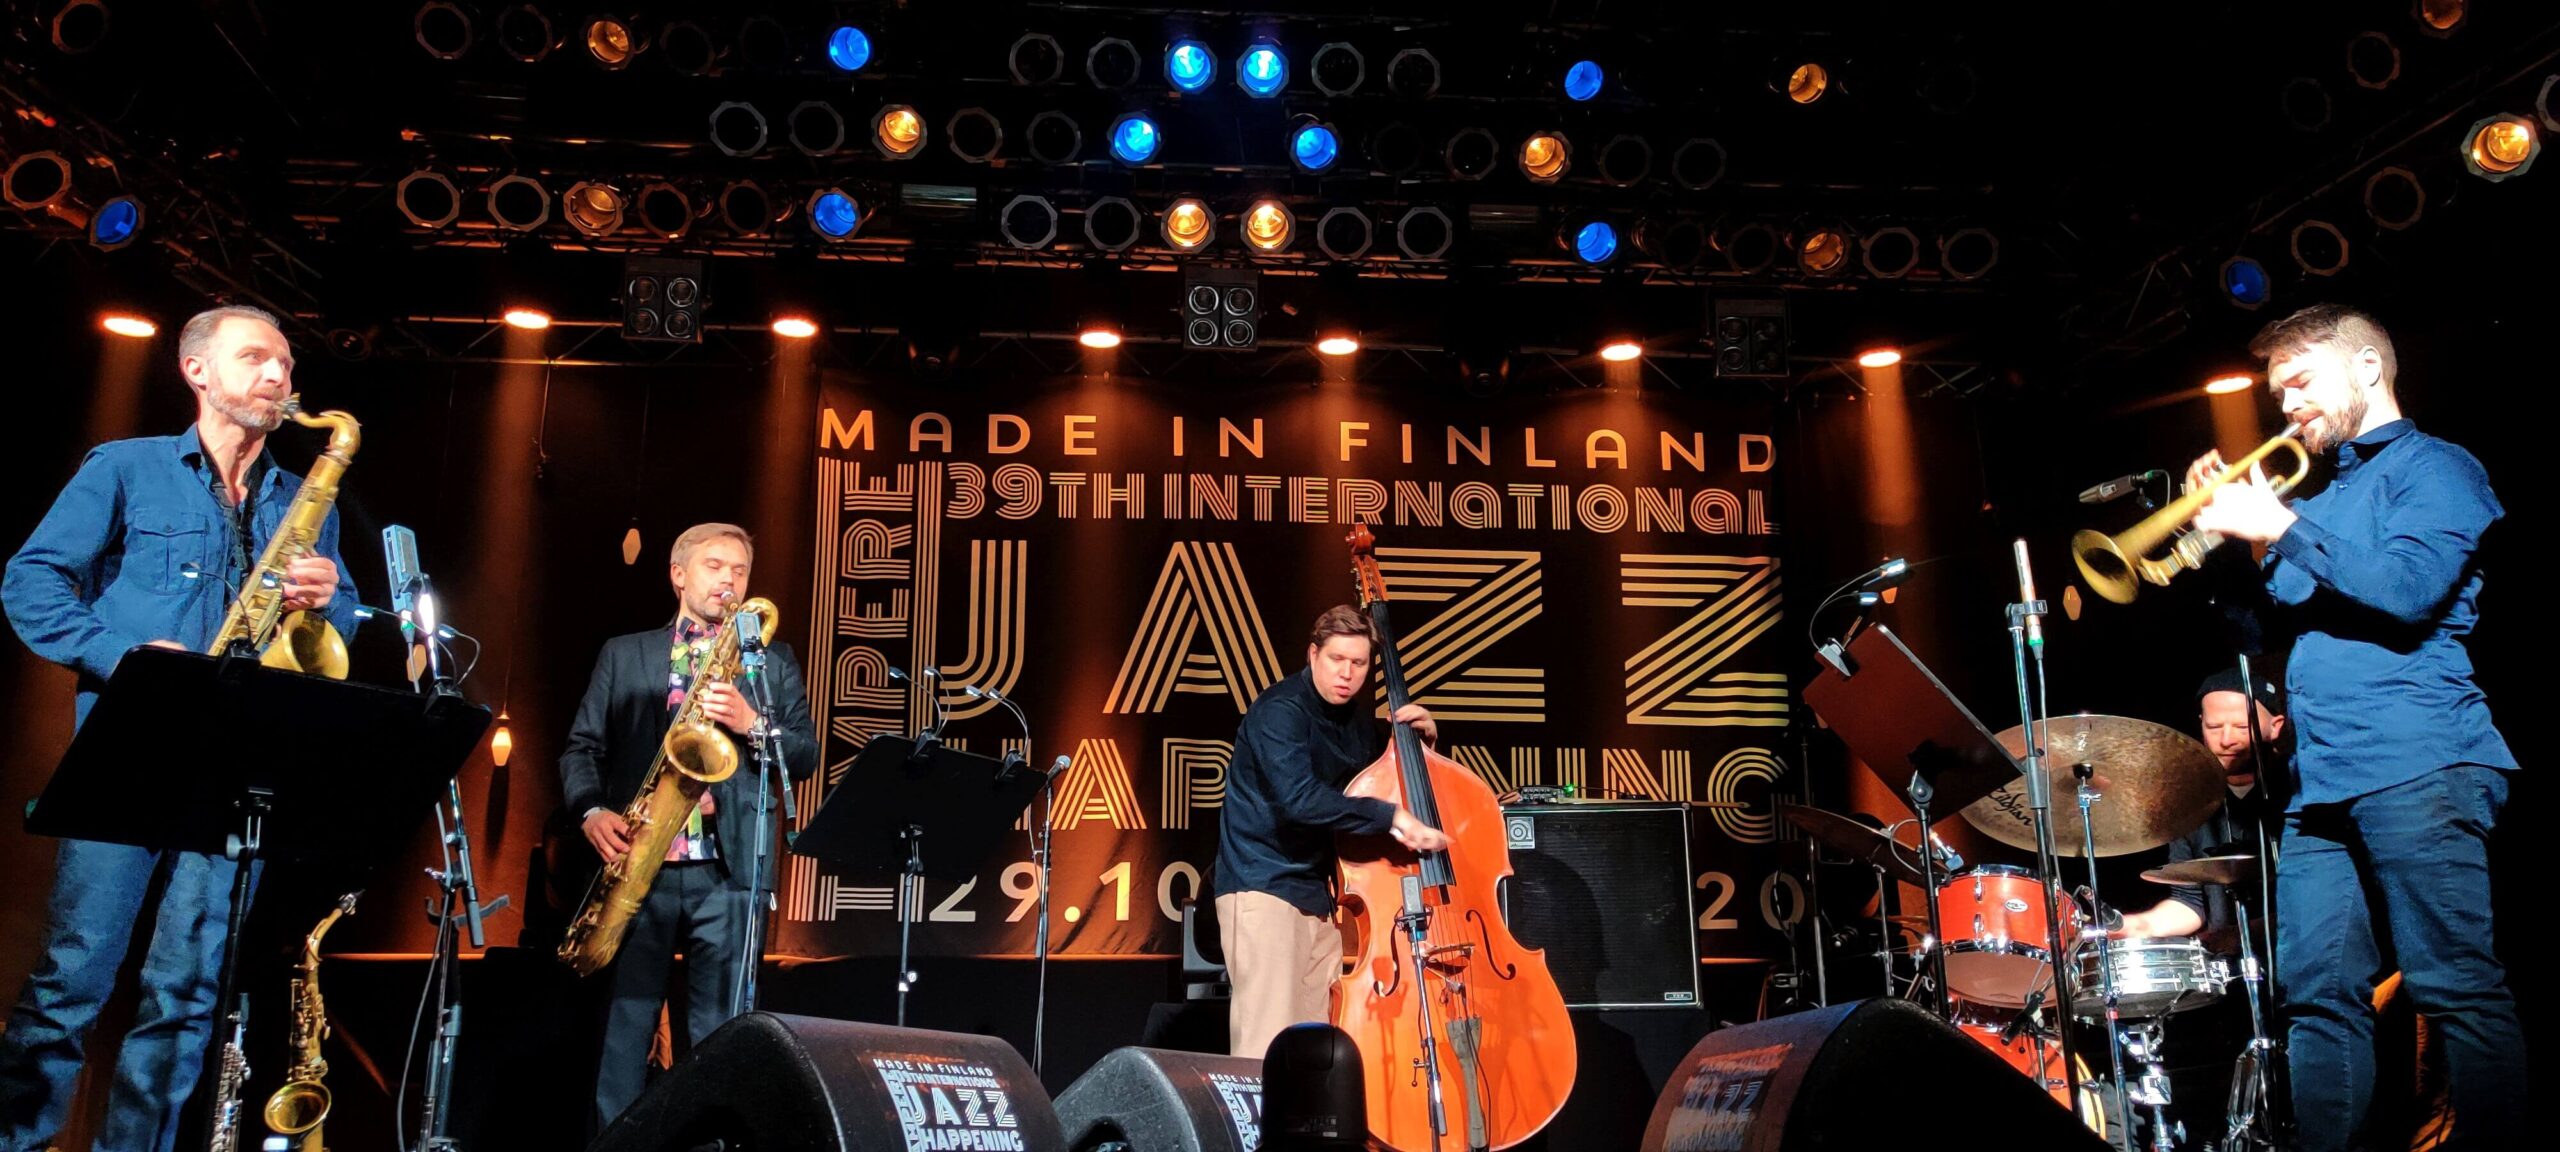 Tampere Jazz Happening 2020 – Lauantai-ilta Pakkahuoneella